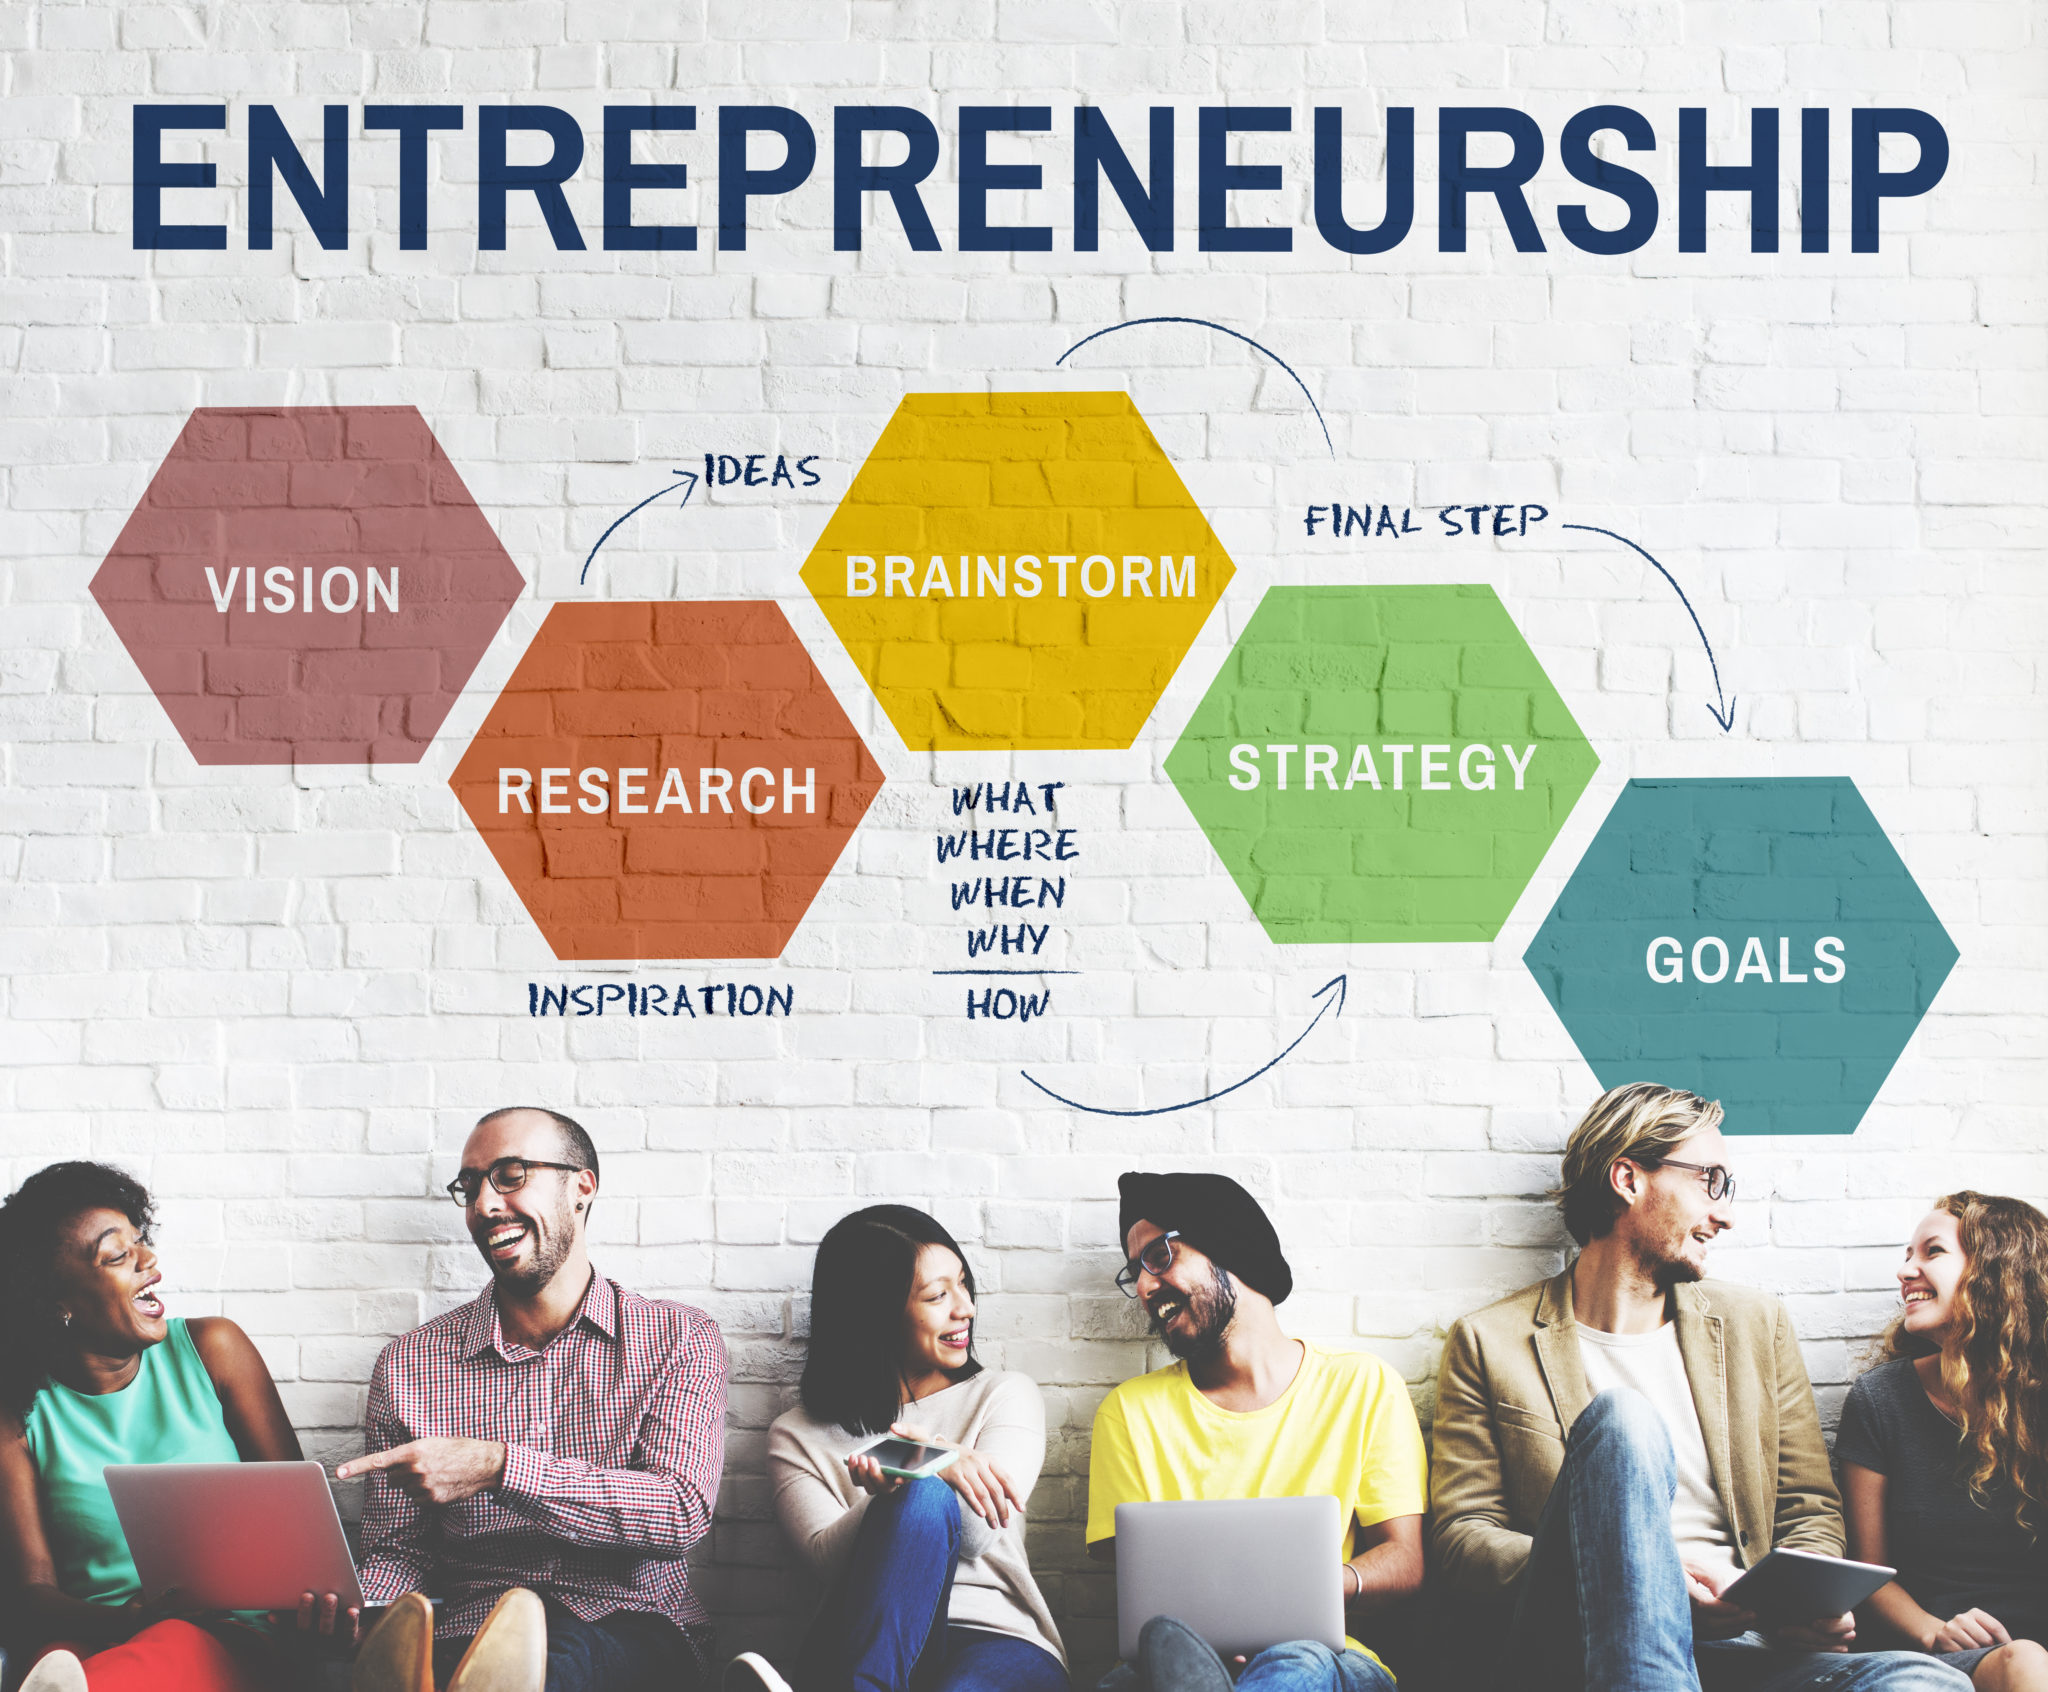 format of business plan in entrepreneurship